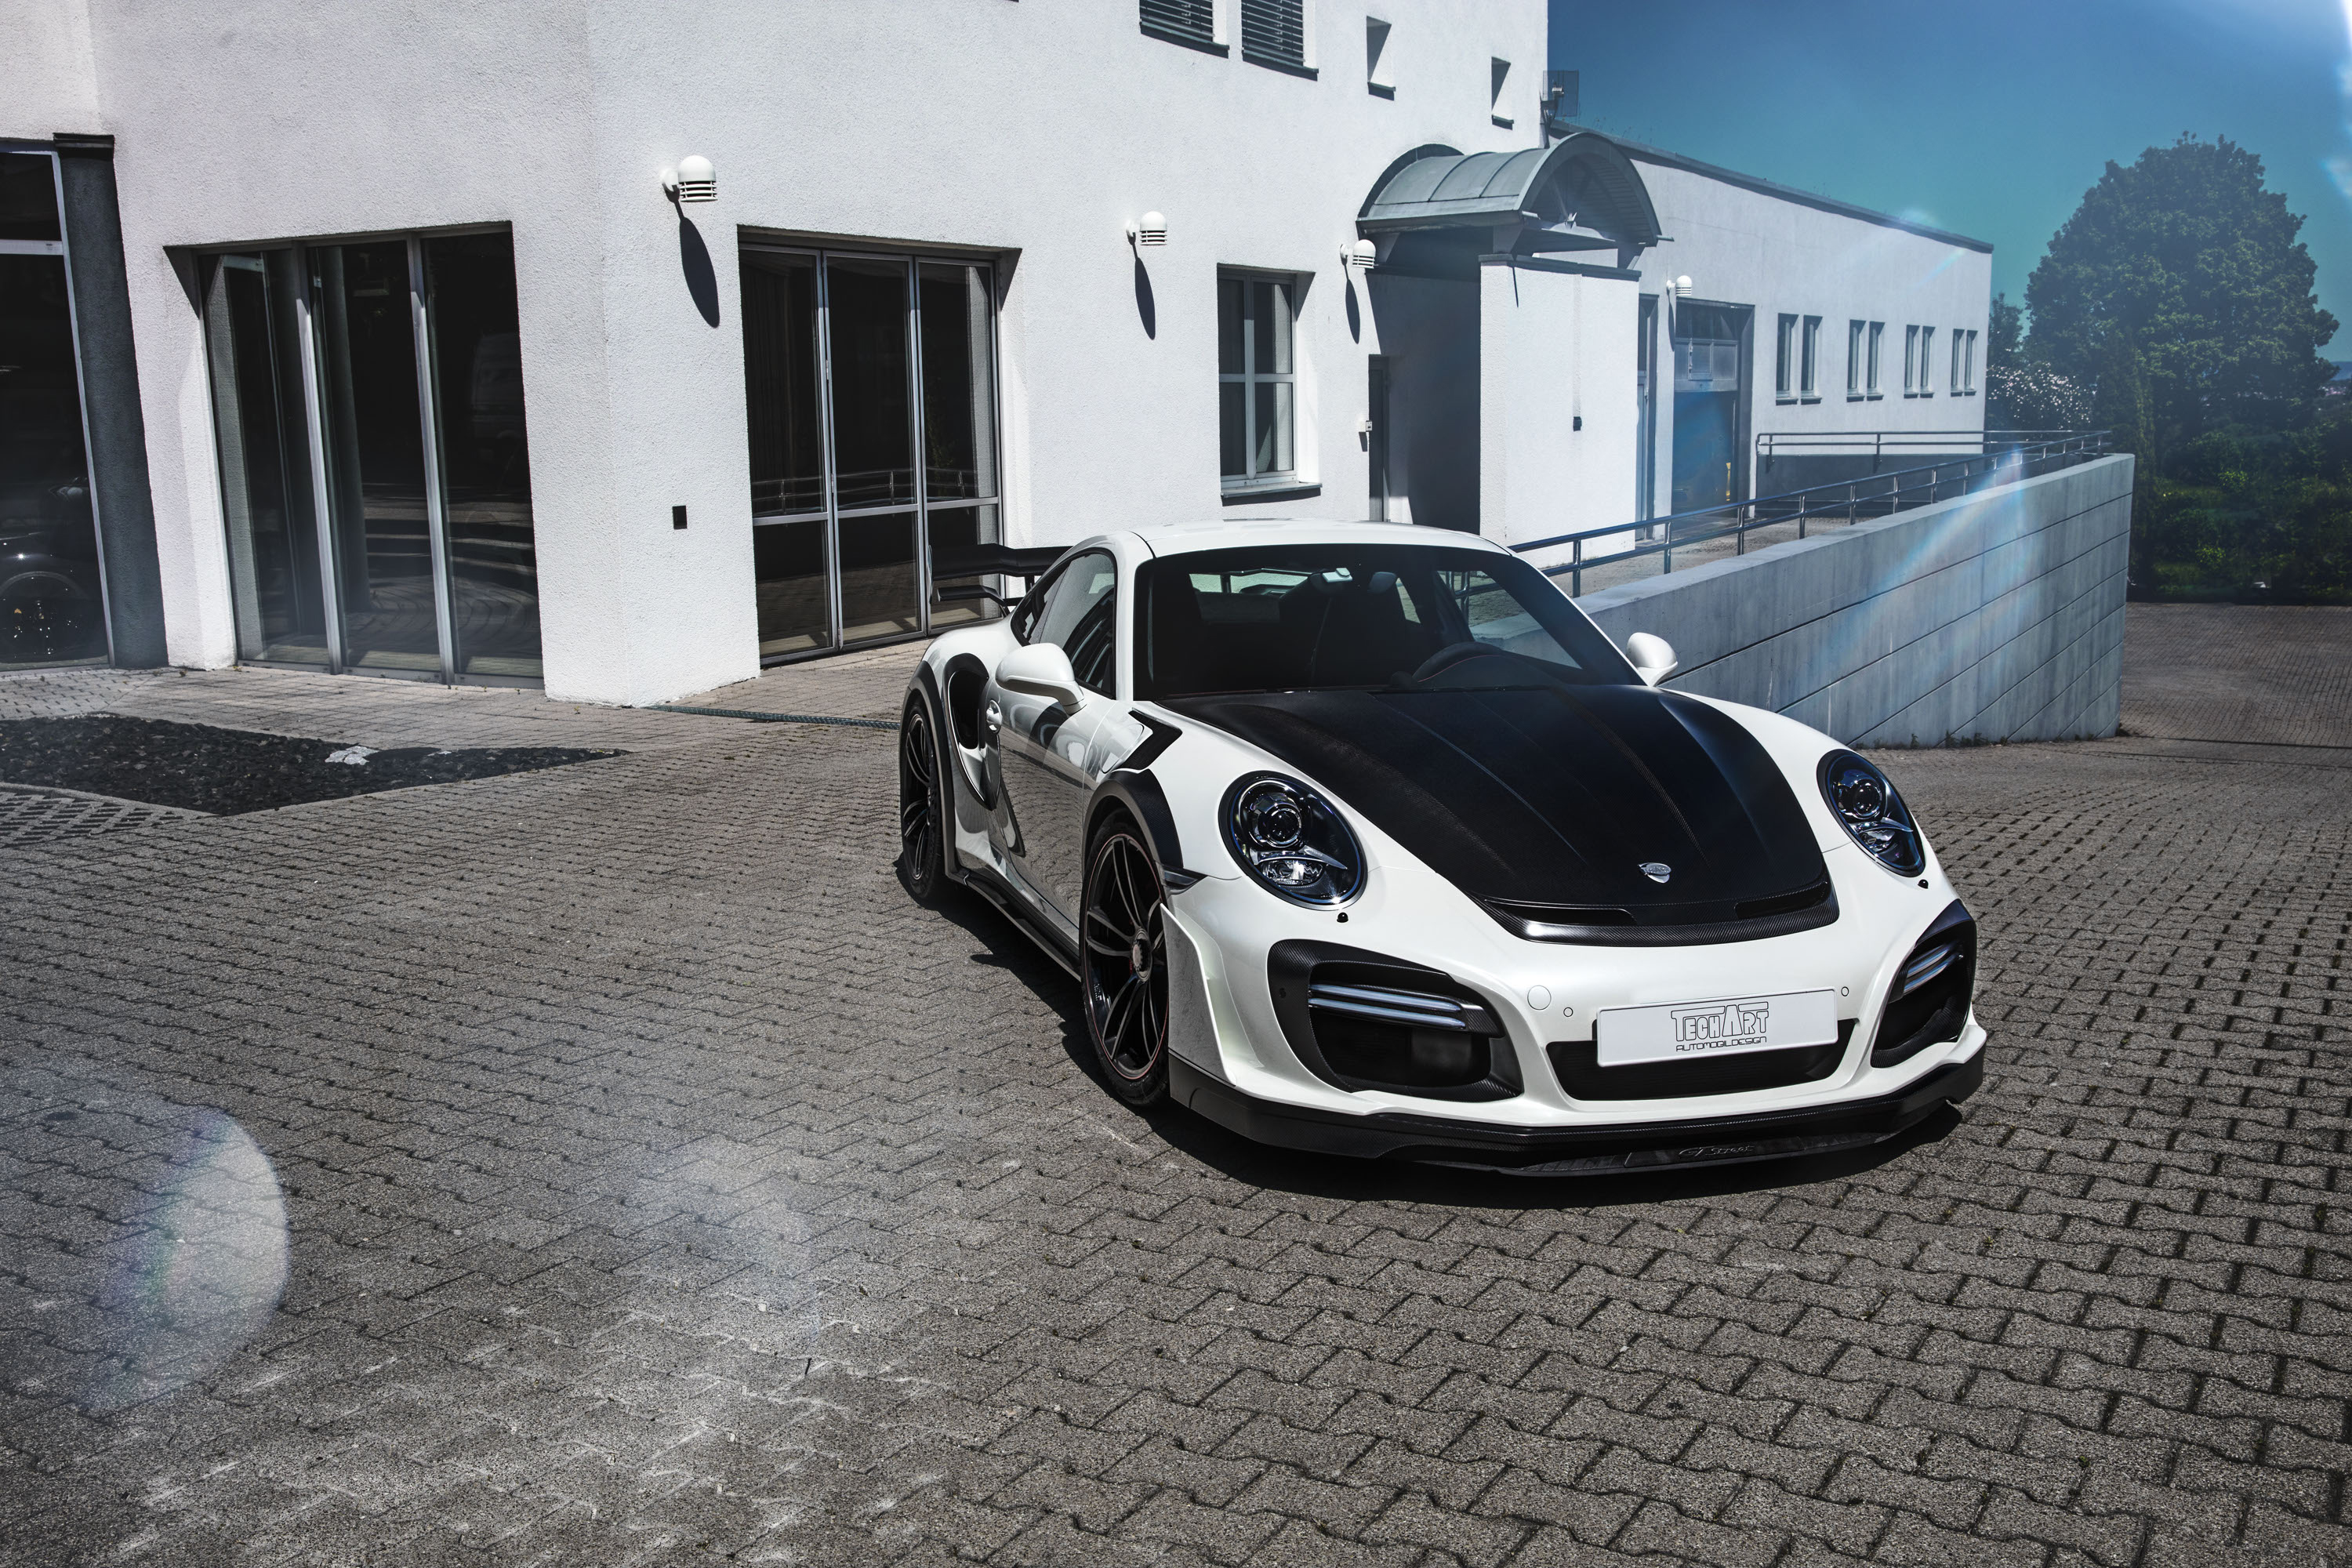 Descarga gratuita de fondo de pantalla para móvil de Porsche, Coche, Porsche 911, Vehículos, Coche Blanco, Porsche 911 Turbo.